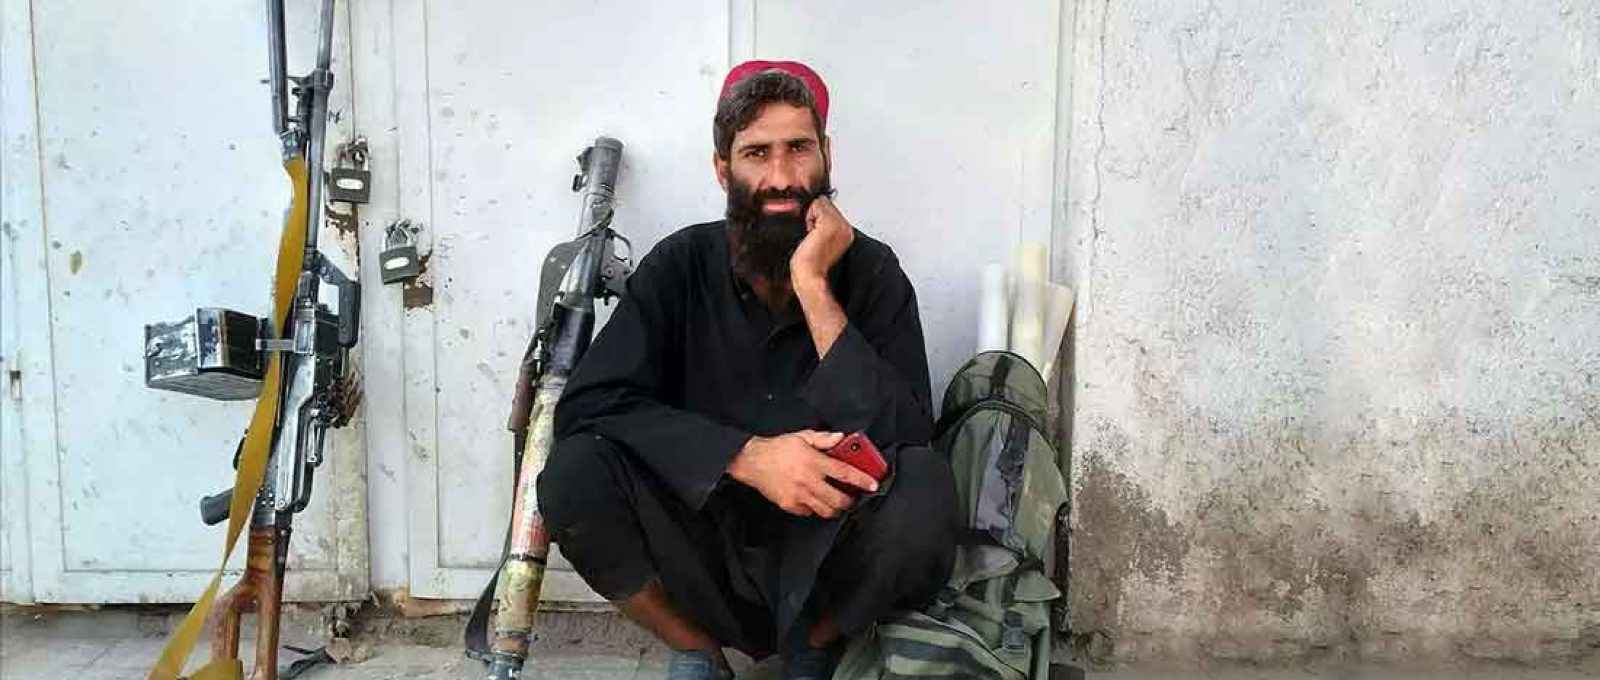 Combatente do Talibã na cidade de Farah, capital da província de Farah, a sudoeste de Cabul, Afeganistão, na quarta-feira, 11 de agosto de 2021 (Foto: Economic Times).